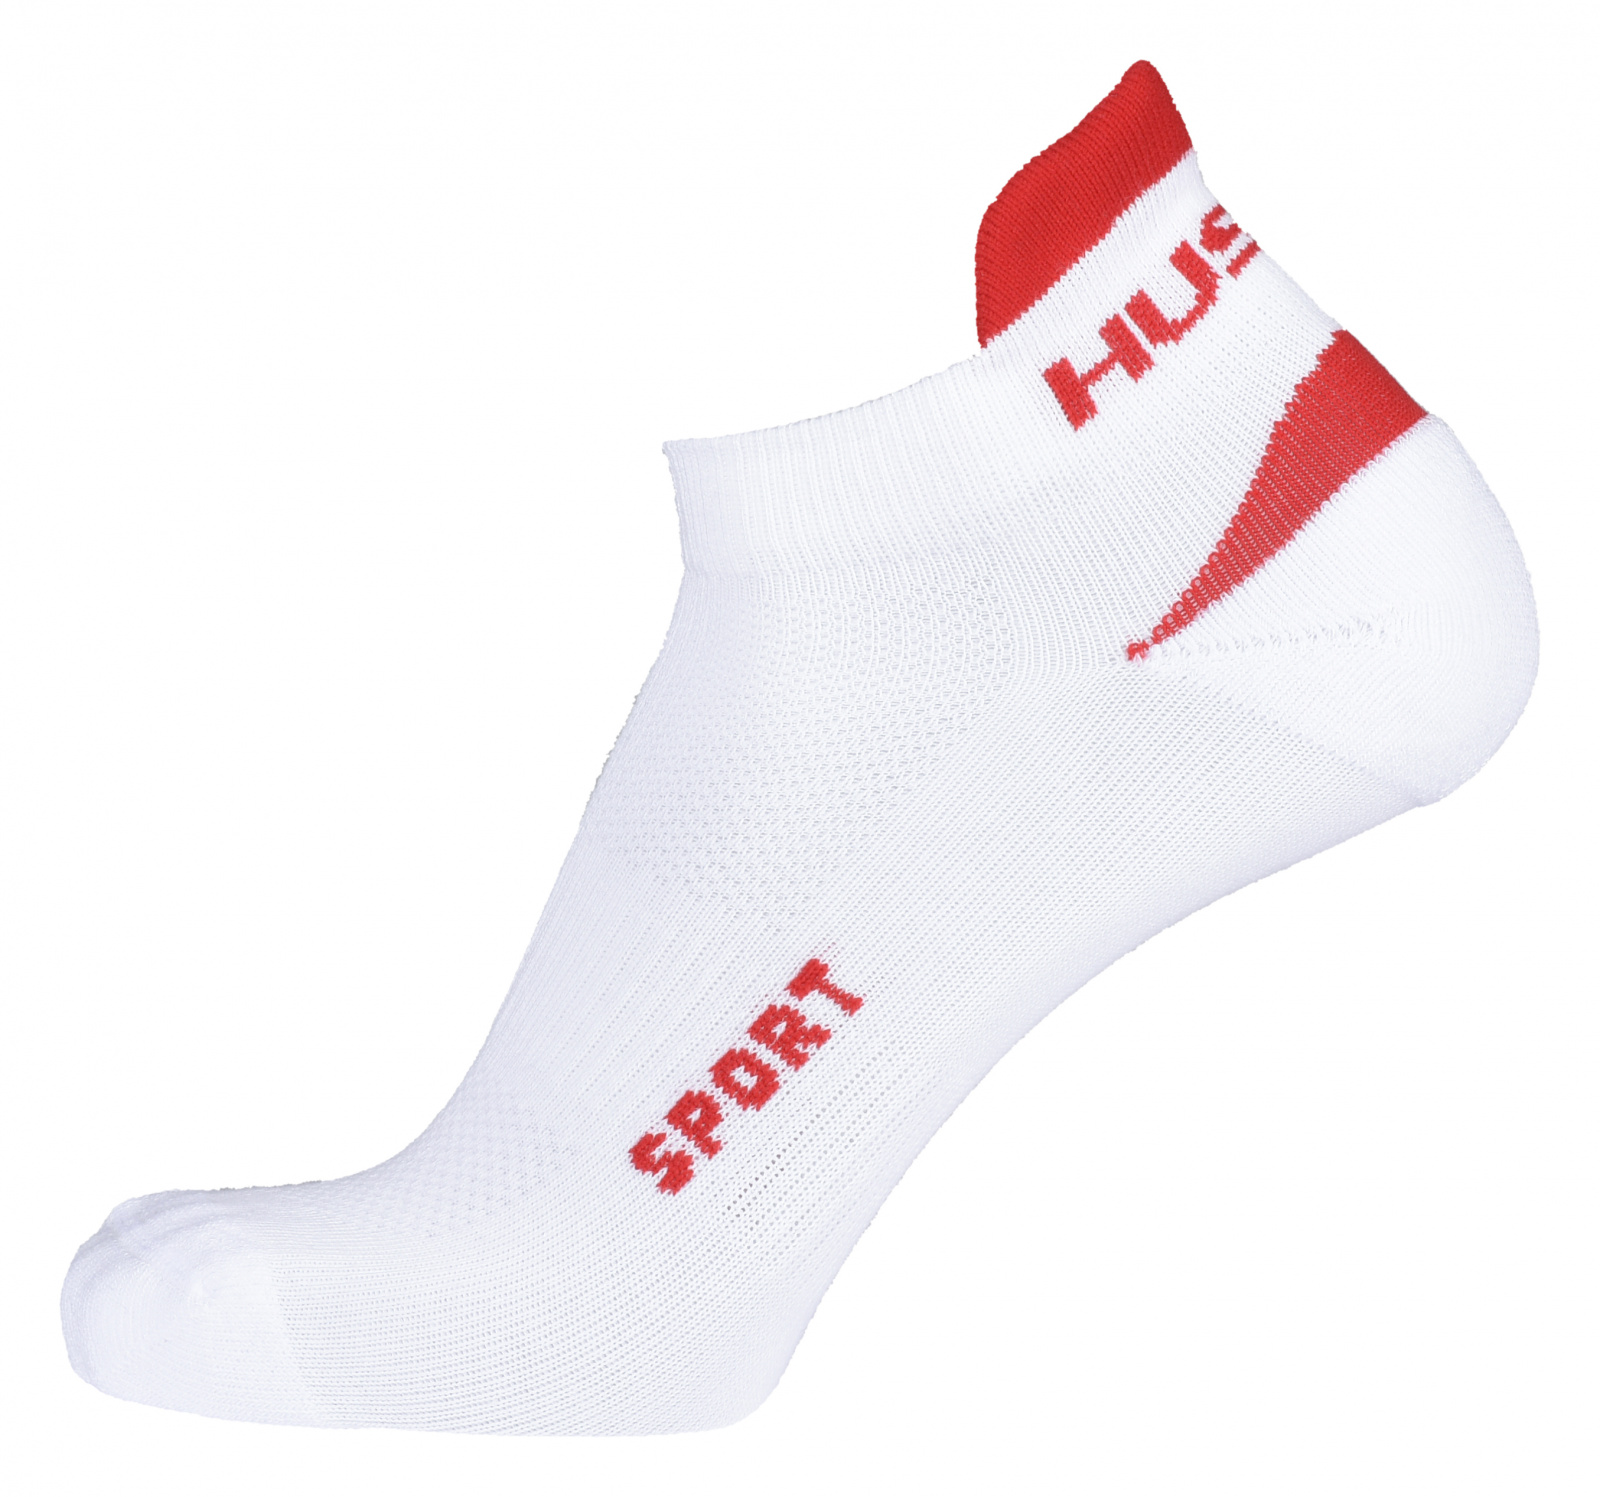 Husky Ponožky Sport biela / červená Veľkosť: M (36-40)